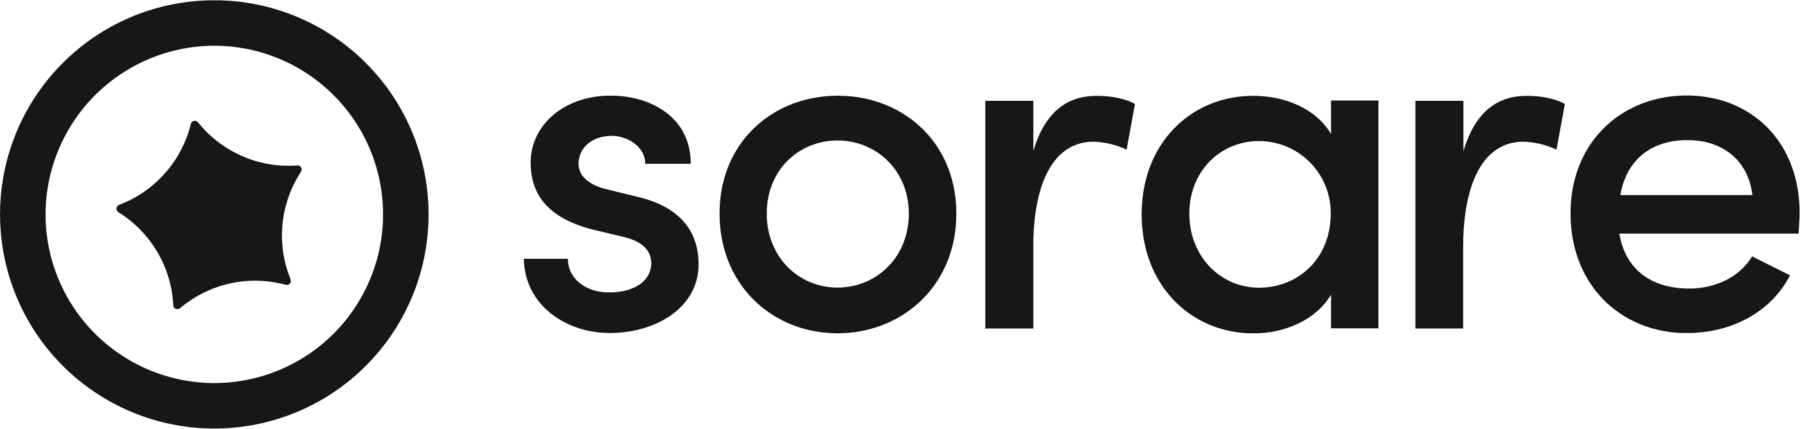 Sorare Logo full black